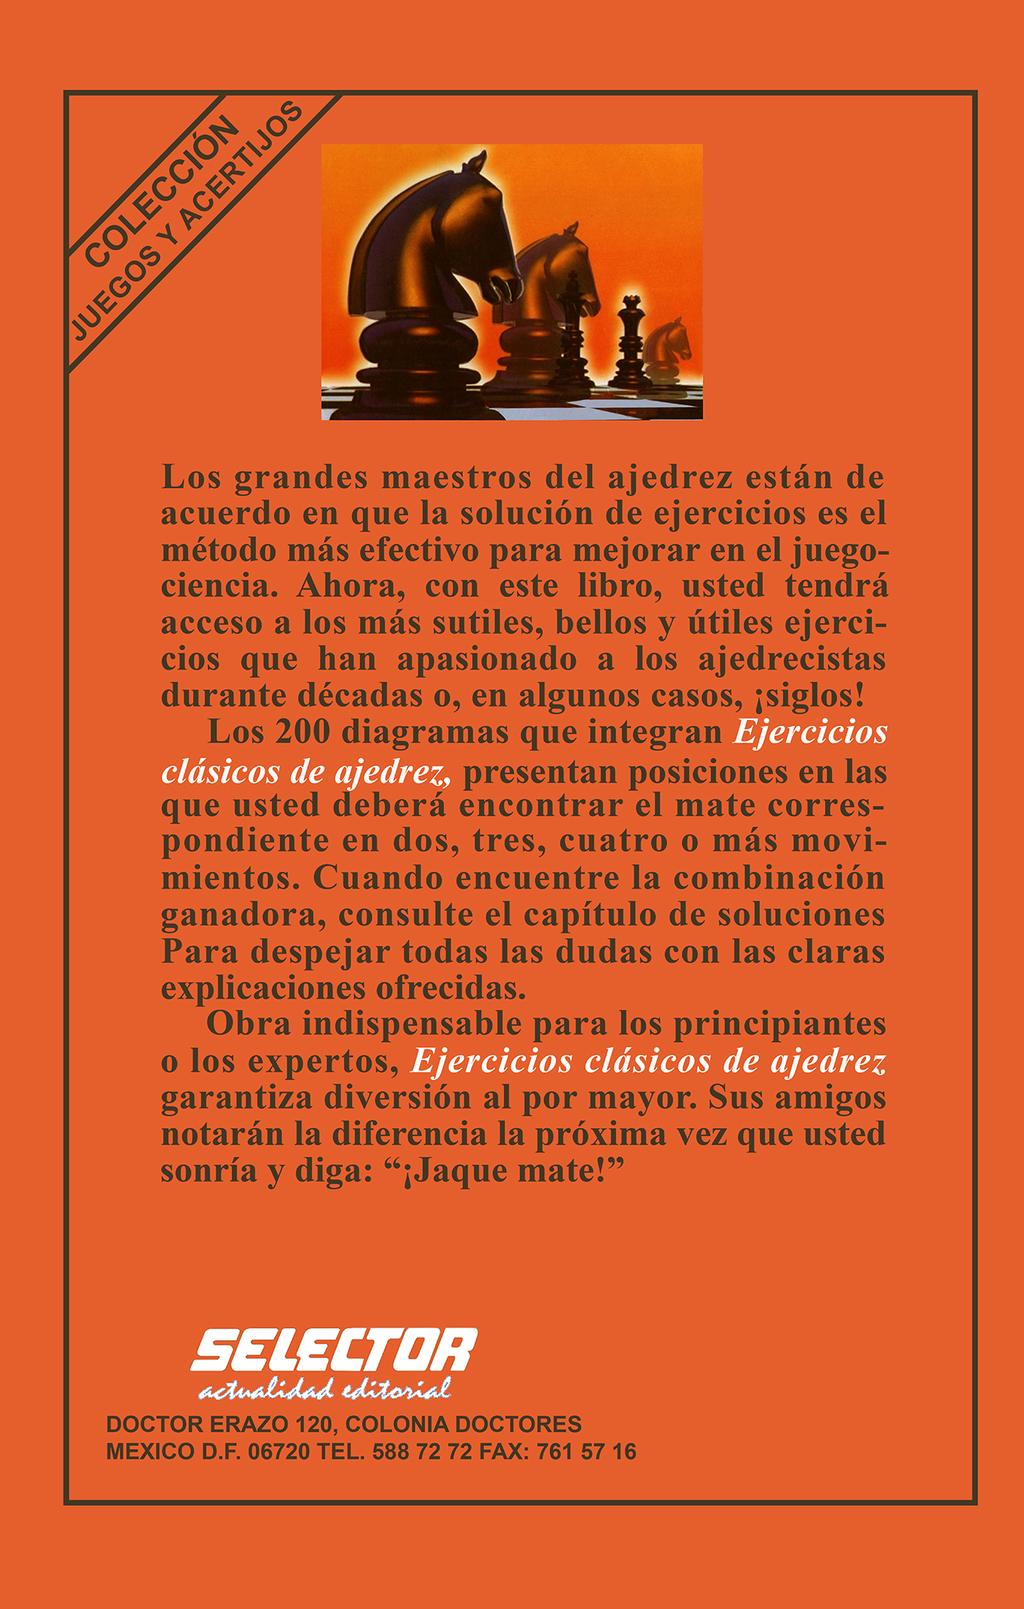 Los grandes maestros del ajedrez están de acuerdo en que la solución de ejercicios es el método más efectivo para mejorar en el juegociencia.